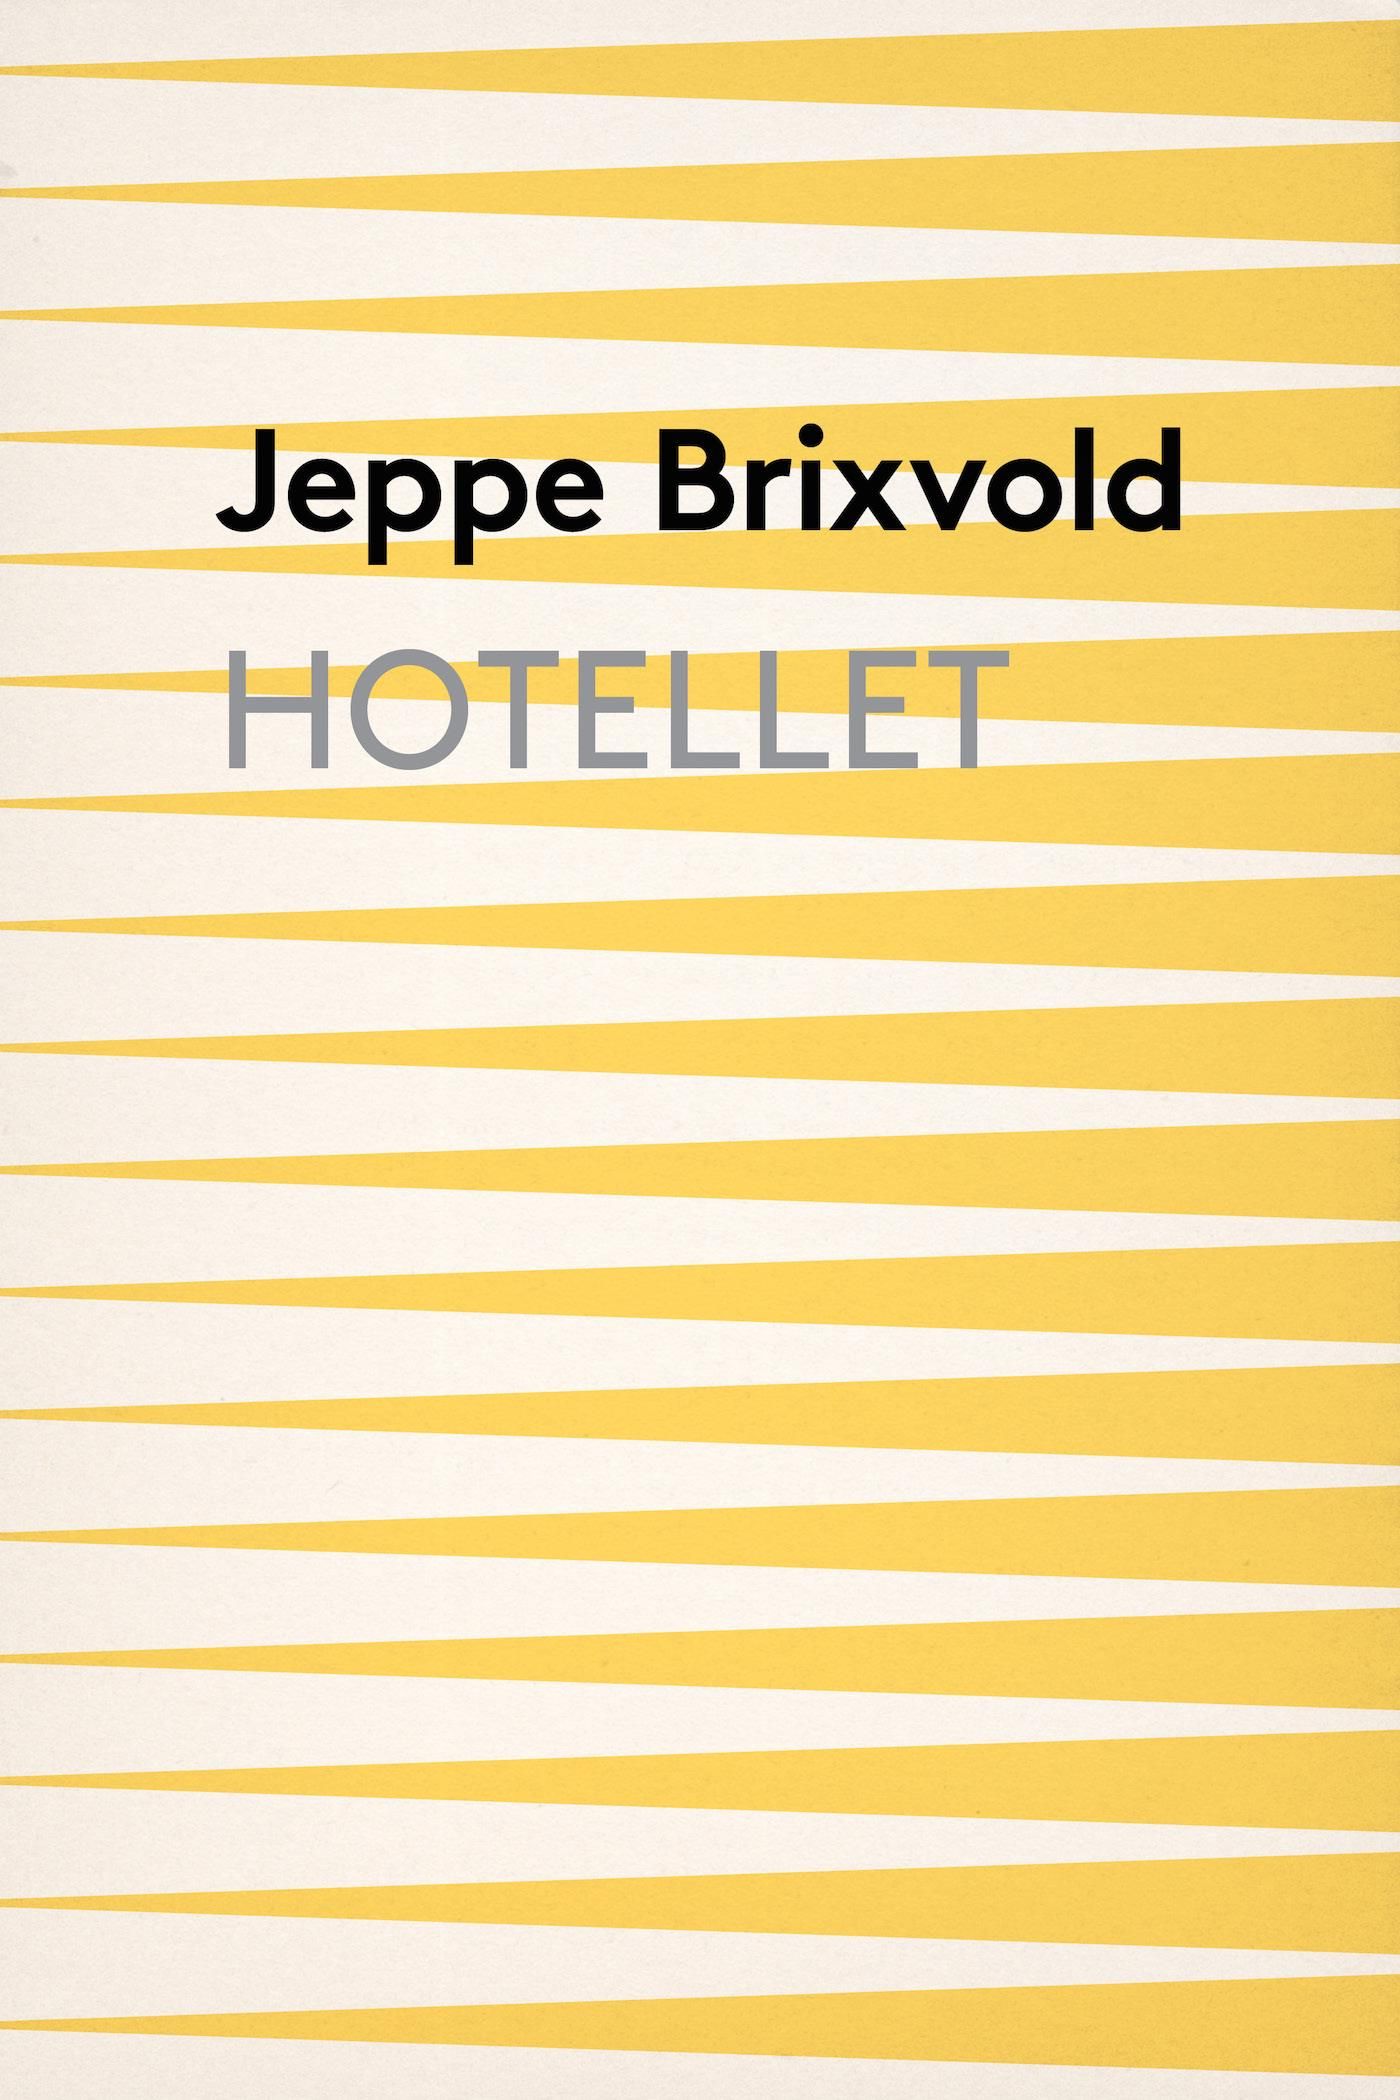 Hotellet, e-bog af Jeppe Brixvold